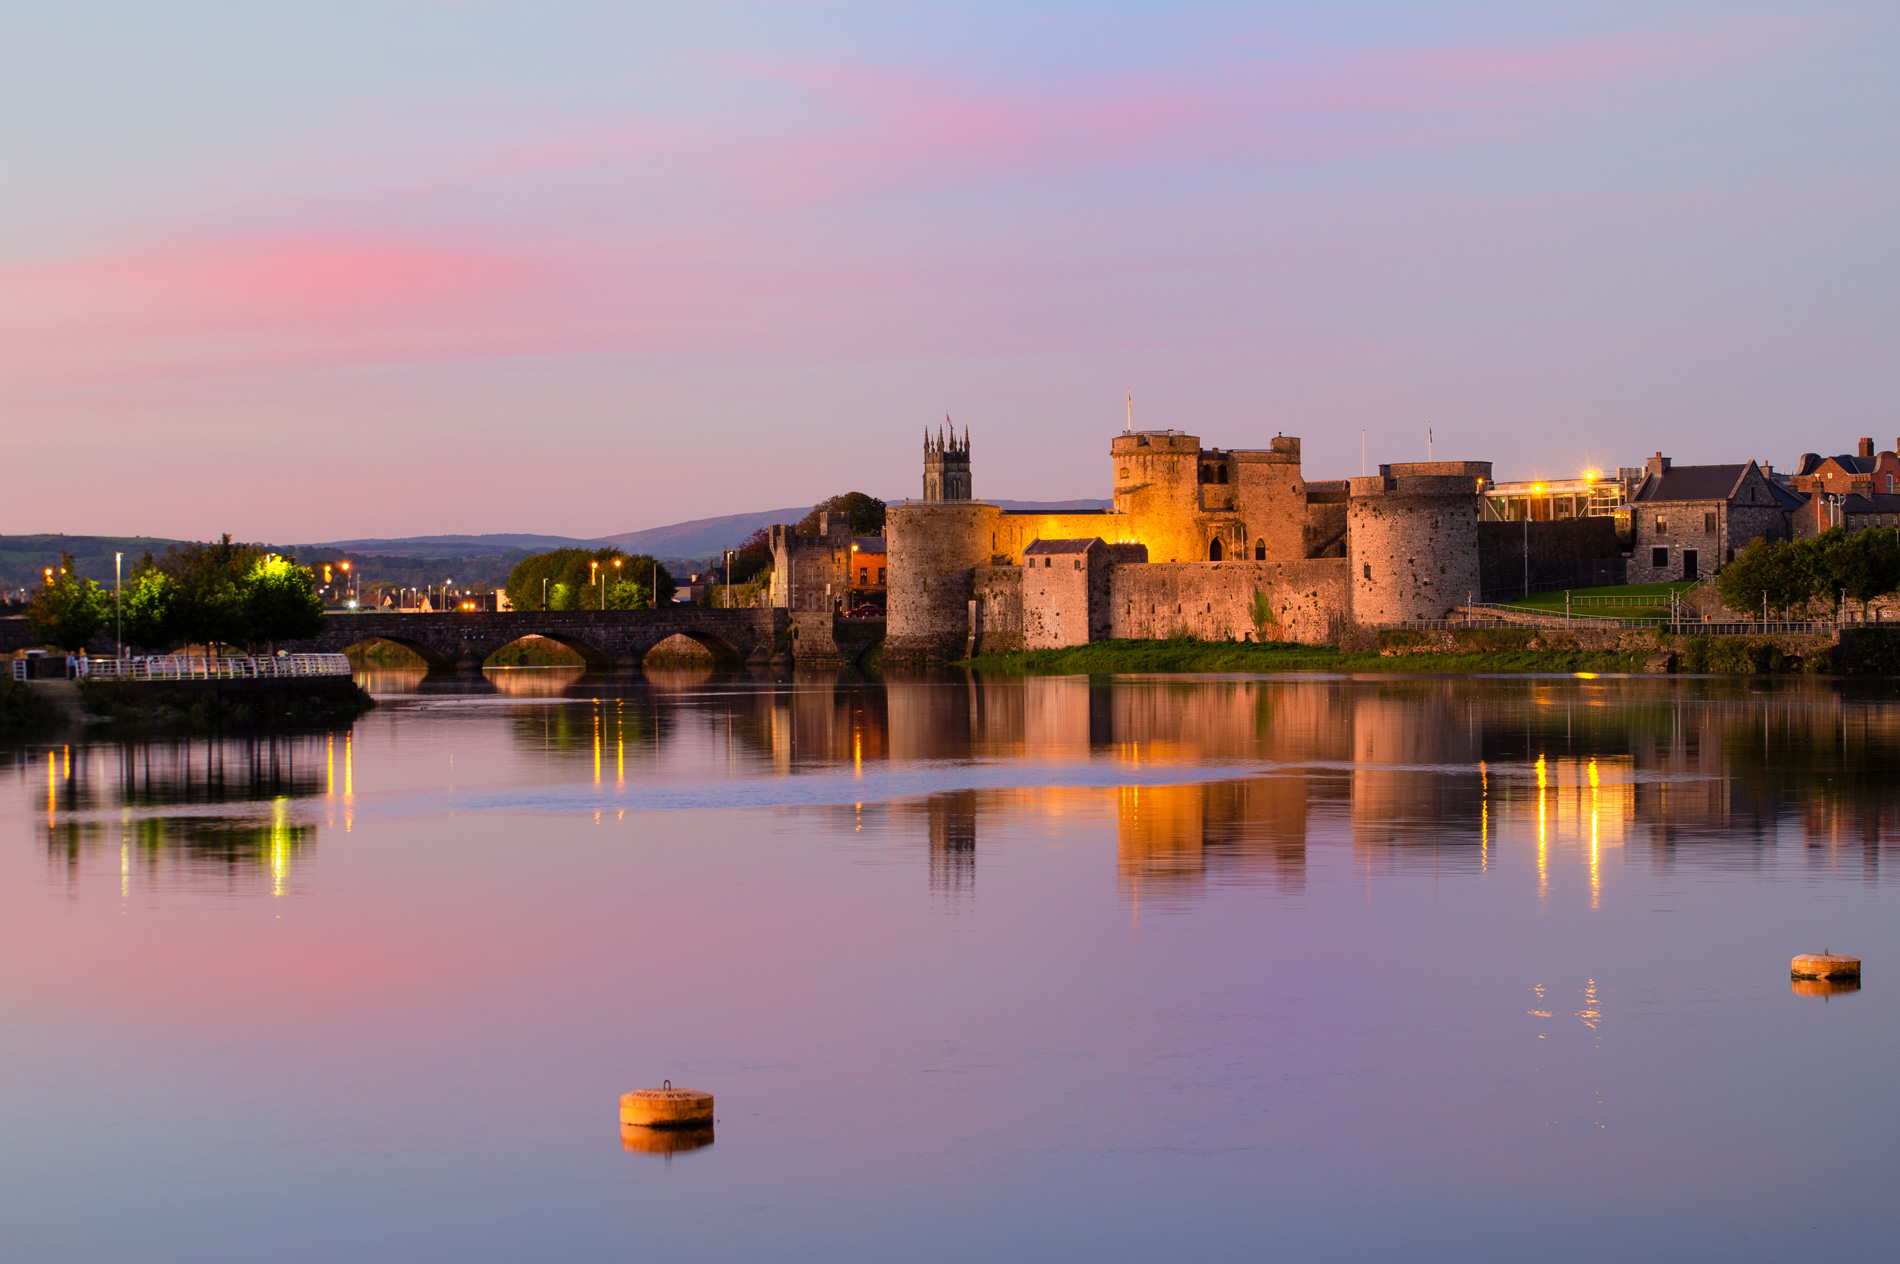 Limerick nằm gần nhiều thành phố lớn khác ở phía tây Ireland như Cork và Galway